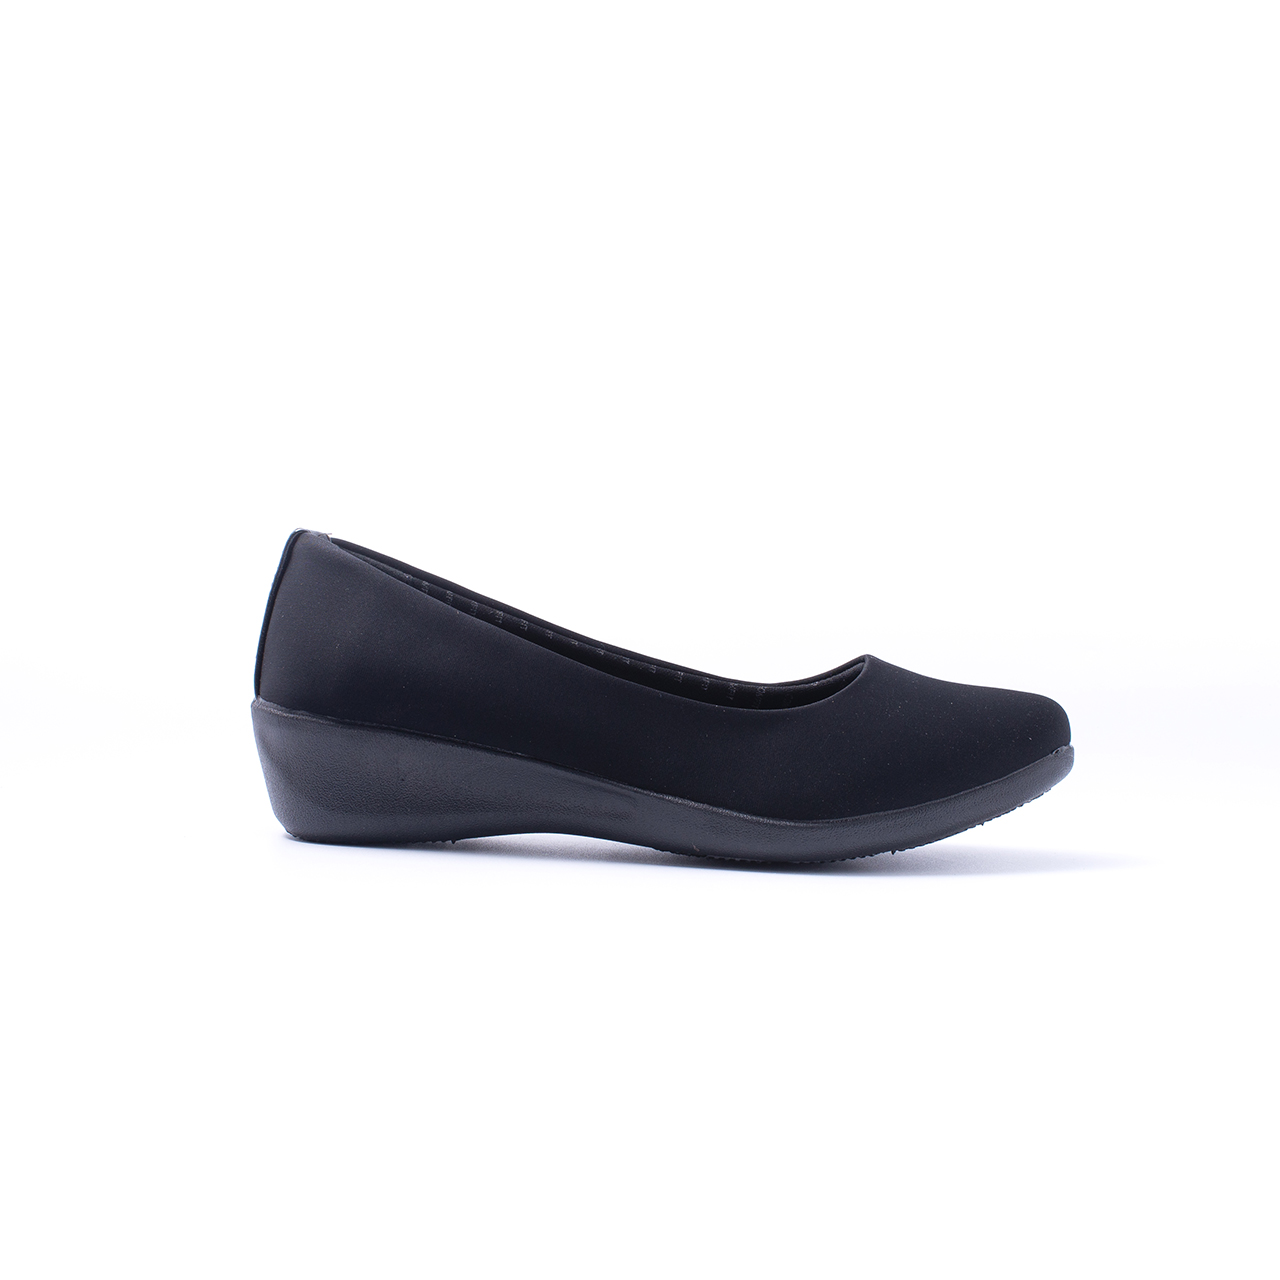 ภาพประกอบของ *Best Seller* Bata Comfit บาจา คอมฟิต รองเท้าเพื่อสุขภาพ รองเท้าคัทชู พื้นนิ่ม น้ำหนักเบา สูง 1 นิ้ว สำหรับผู้หญิง รุ่น Fanny สีดำ 6516571